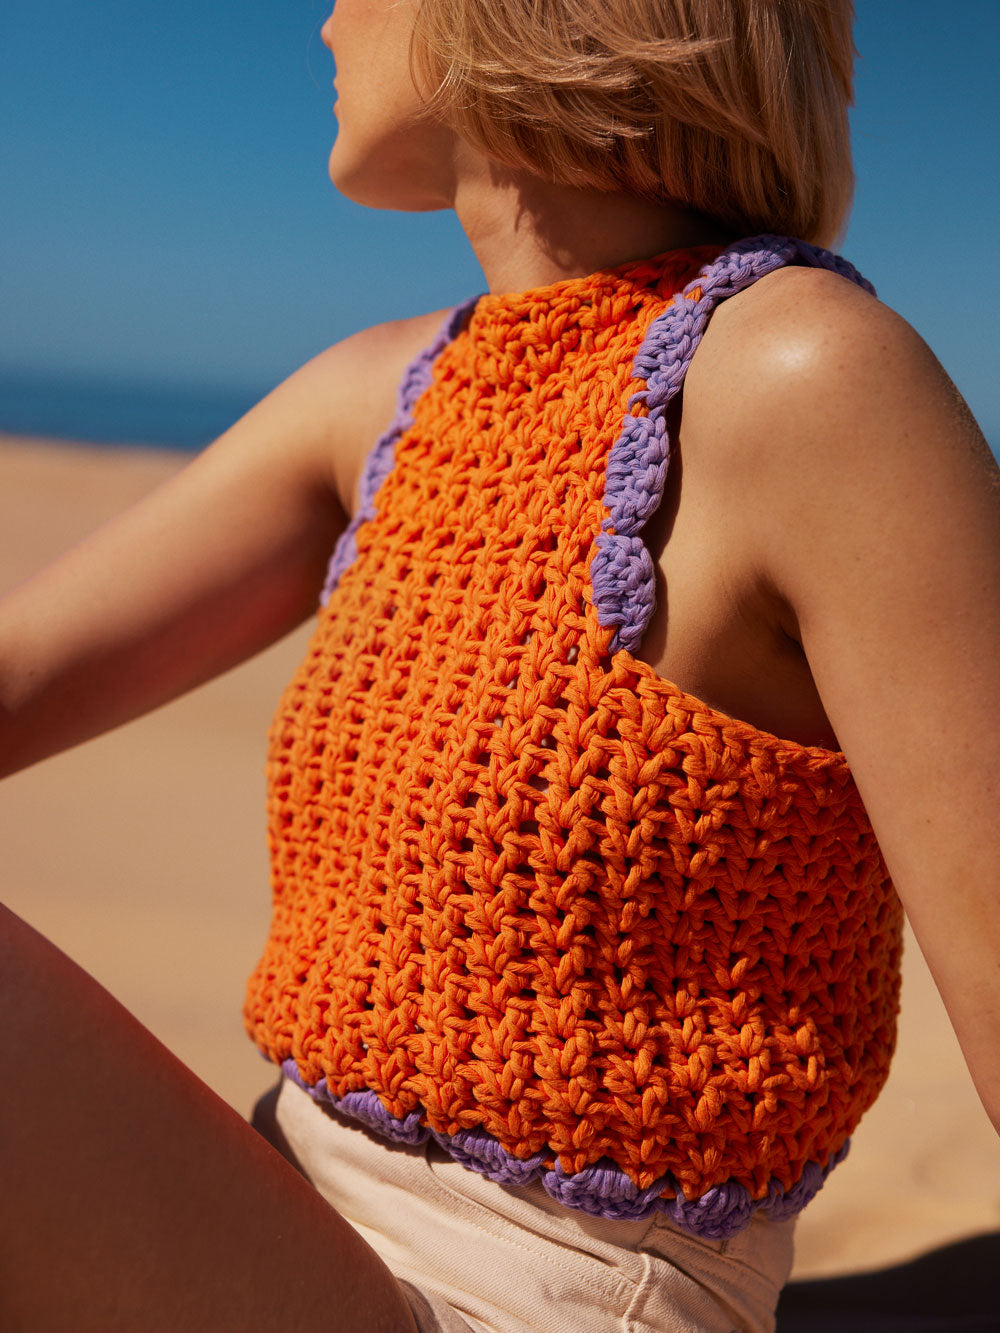 Beginner's Crochet Kit – Crochet Now India